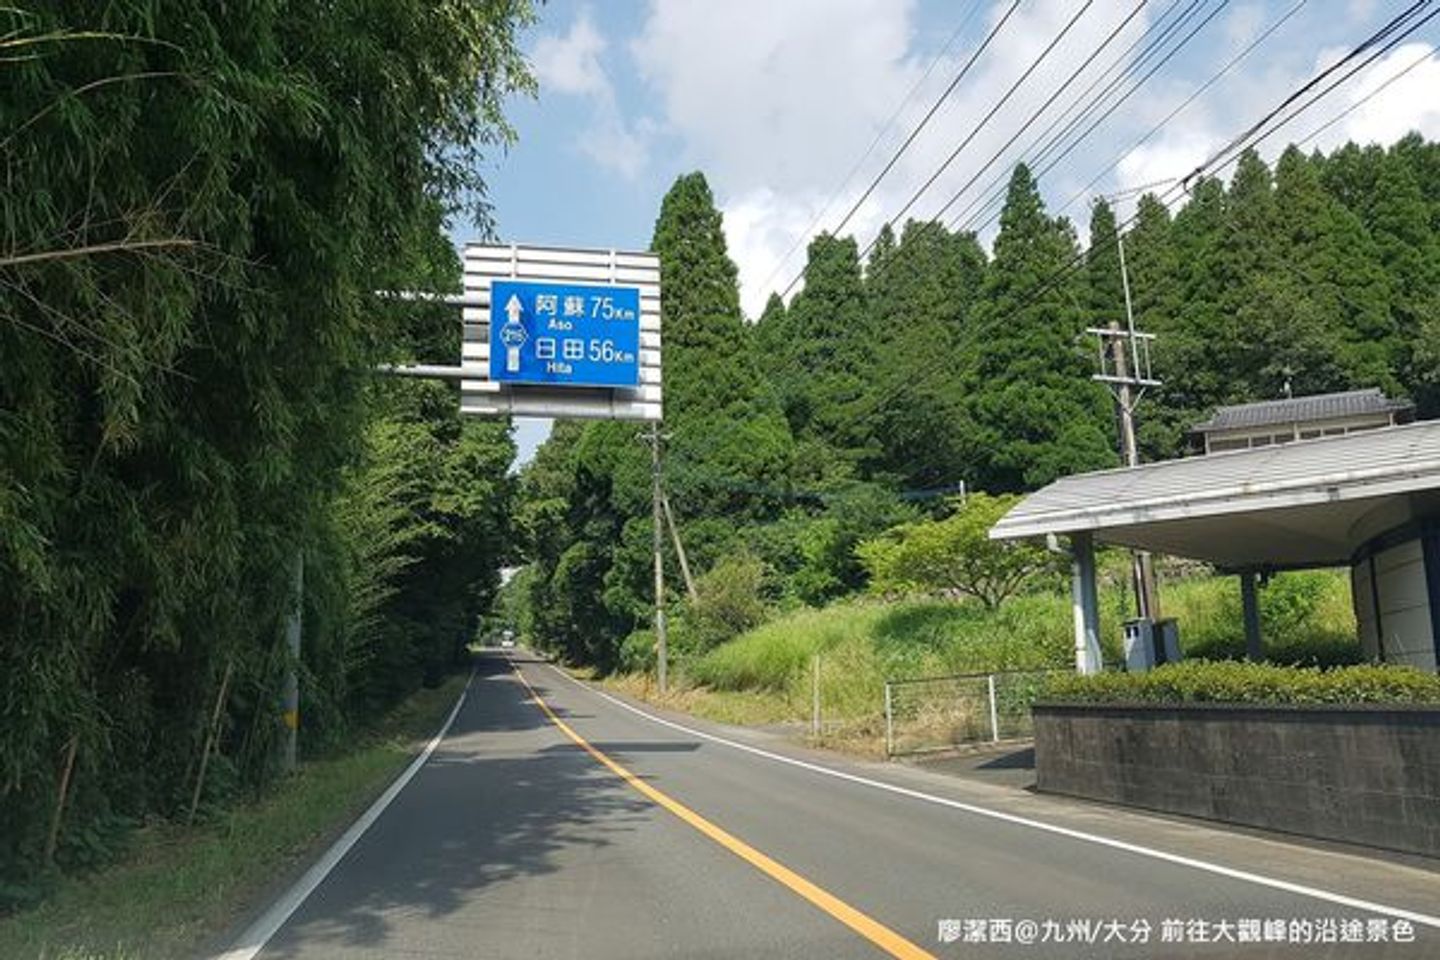 帶孩子一起去日本135 九州環島自駕遊 大分 熊本 18 07 前往大觀峰的沿途景色 日本 九州 旅行酒吧